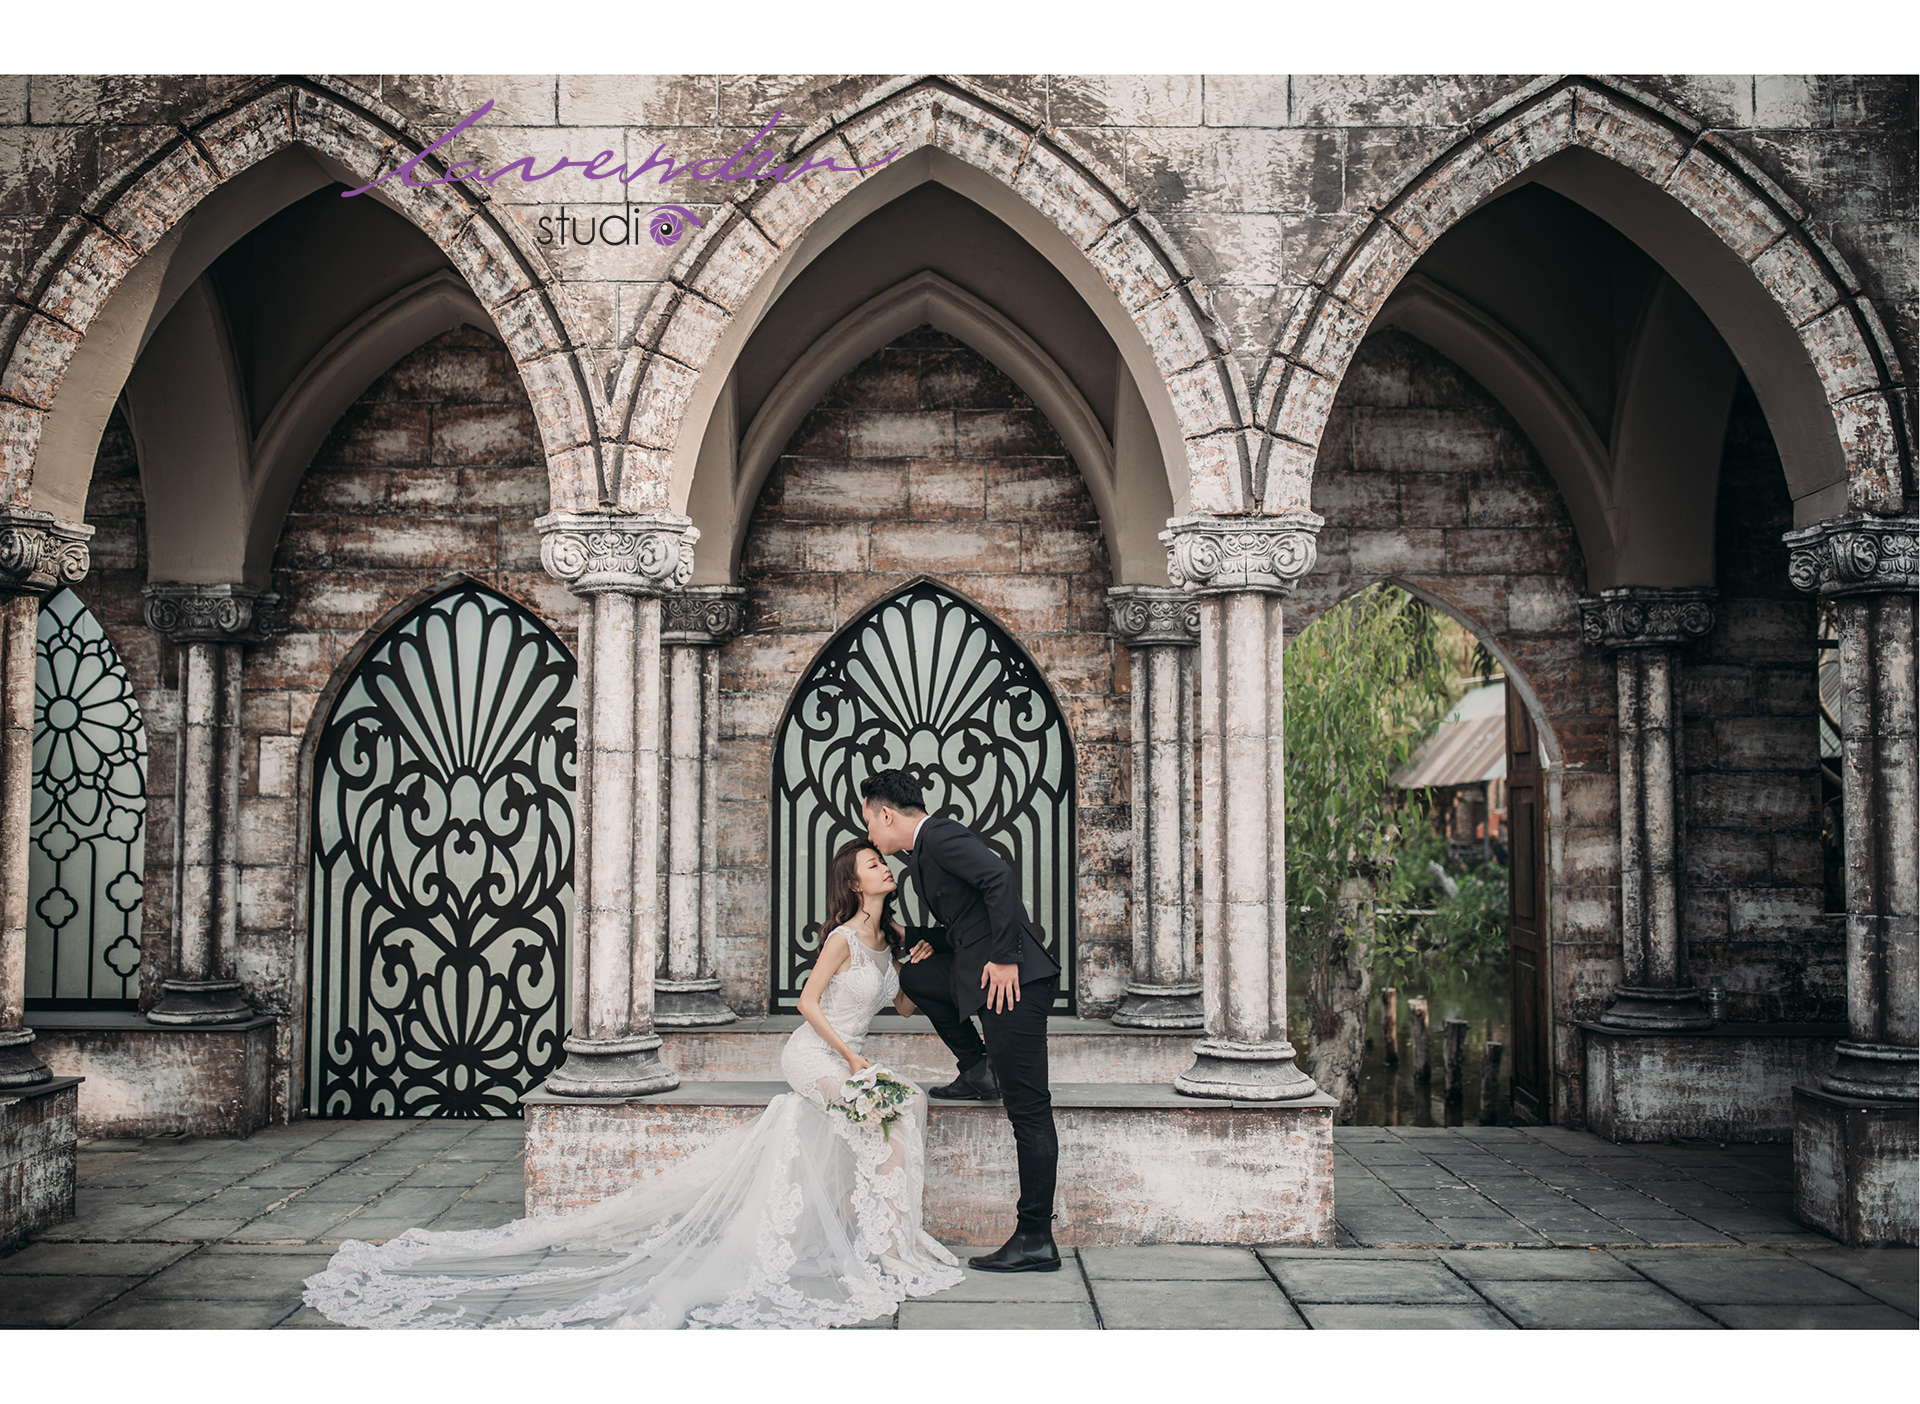 Giá gói chụp ảnh cưới để cổng ở Đà lạt tại Lavender studio bao nhiêu